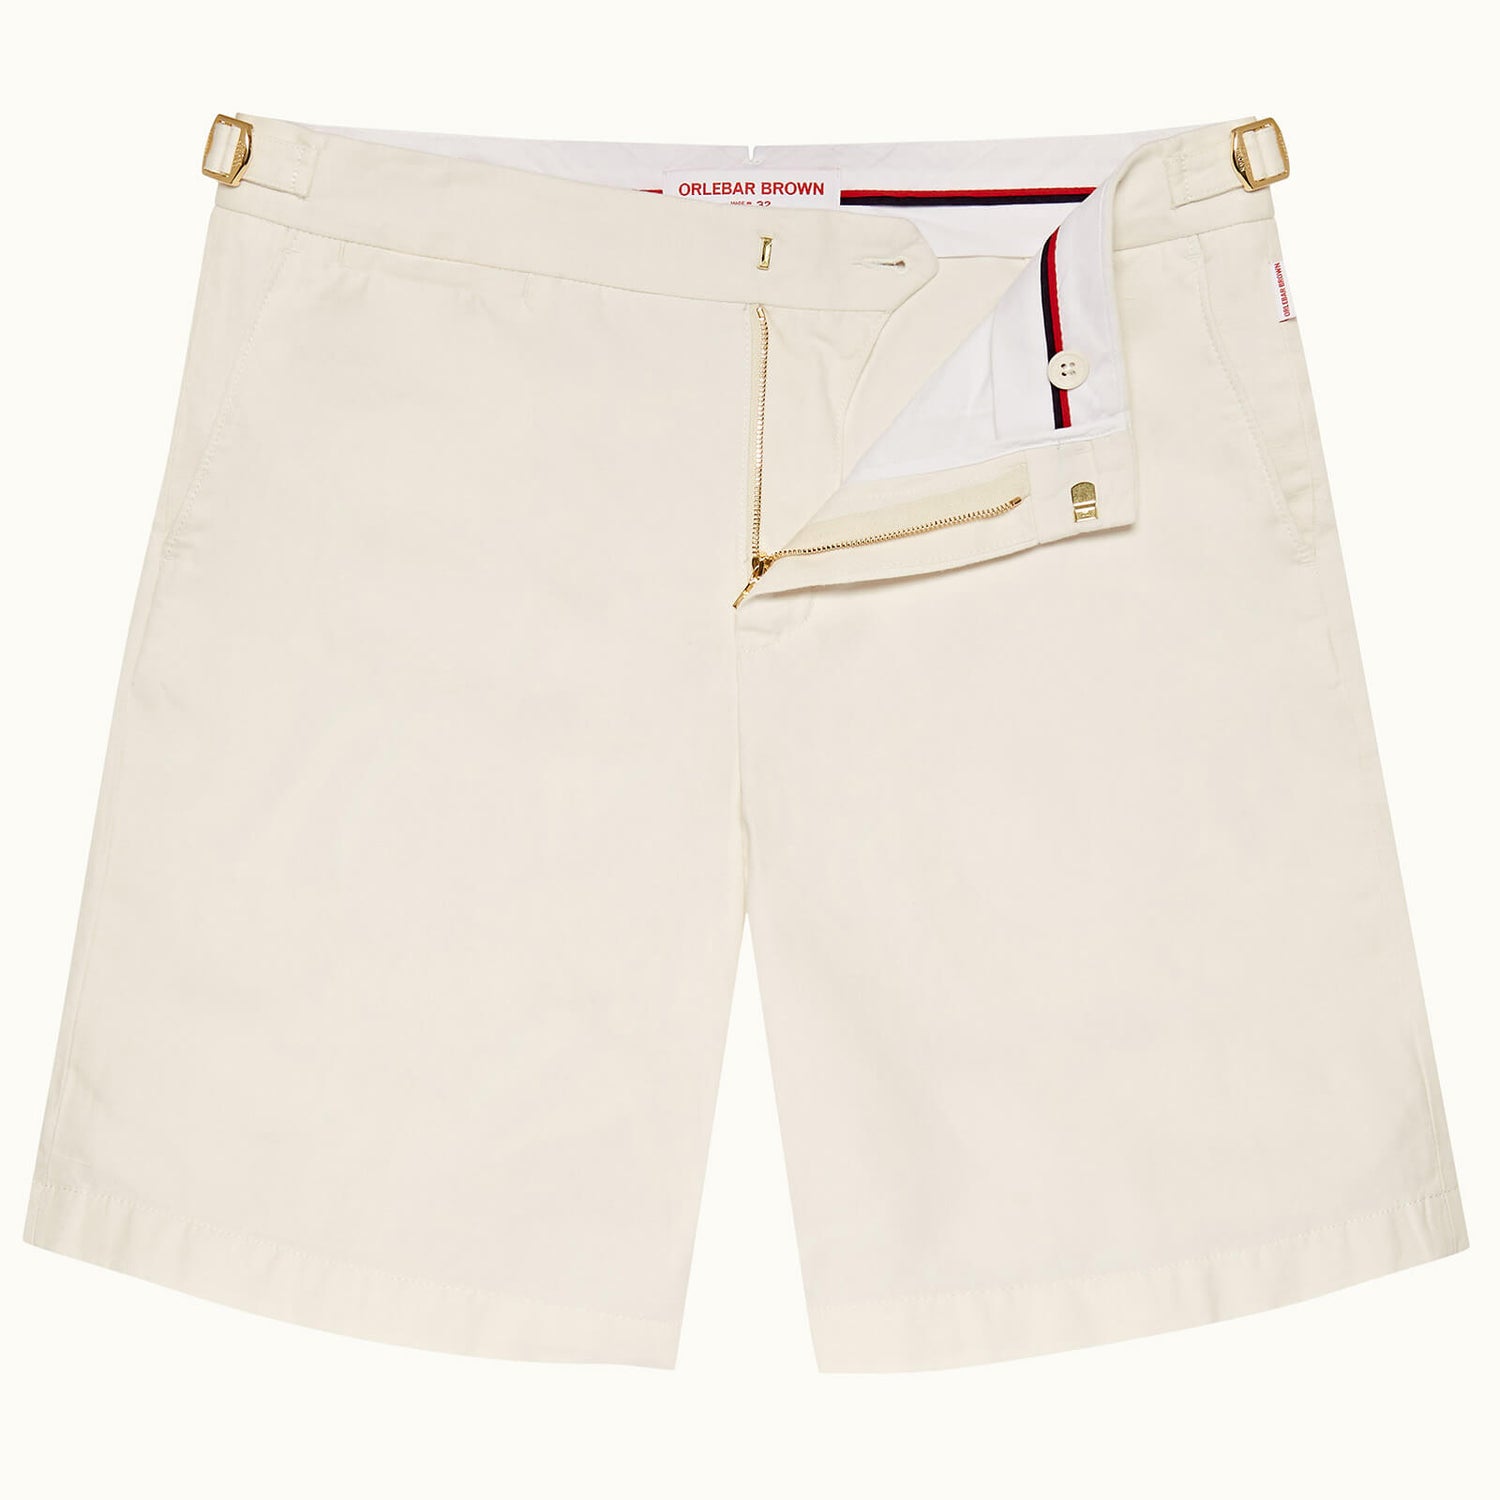 NORWICH GT 系列合身剪裁亚麻混纺短裤 - 沙白色